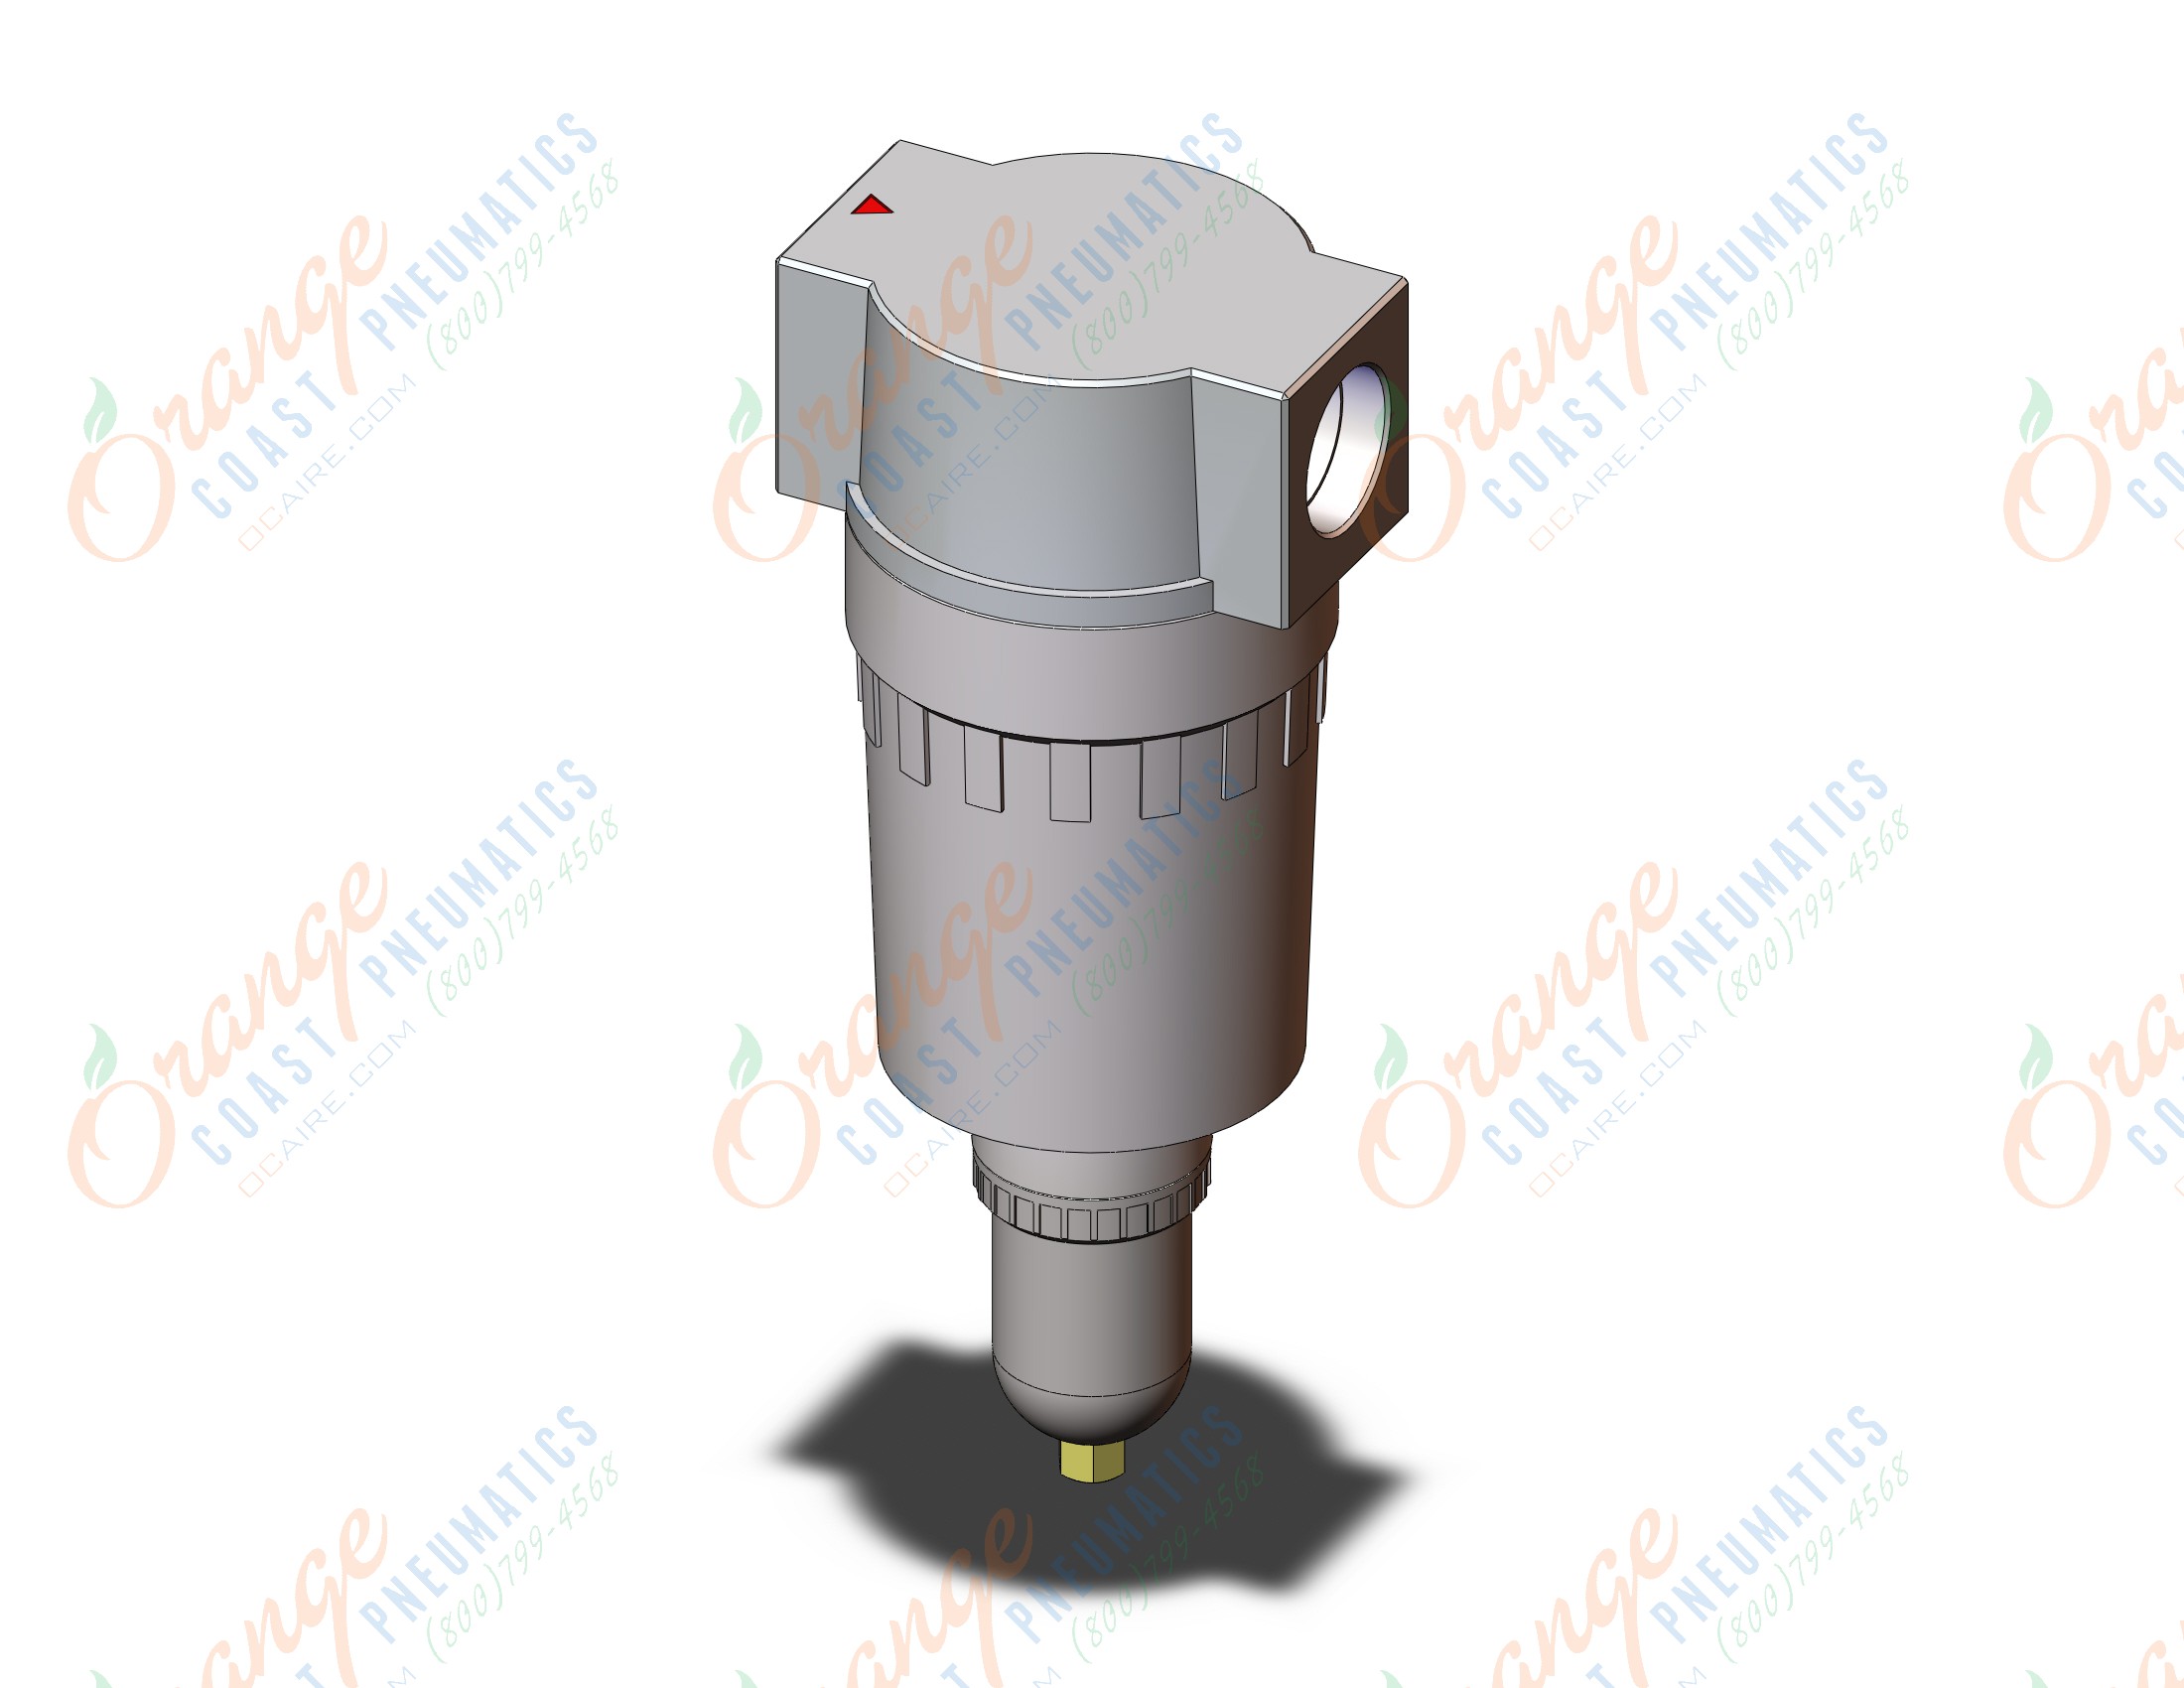 SMC AF900-20-2-D large flow air filter, AIR FILTER, LARGE FLOW